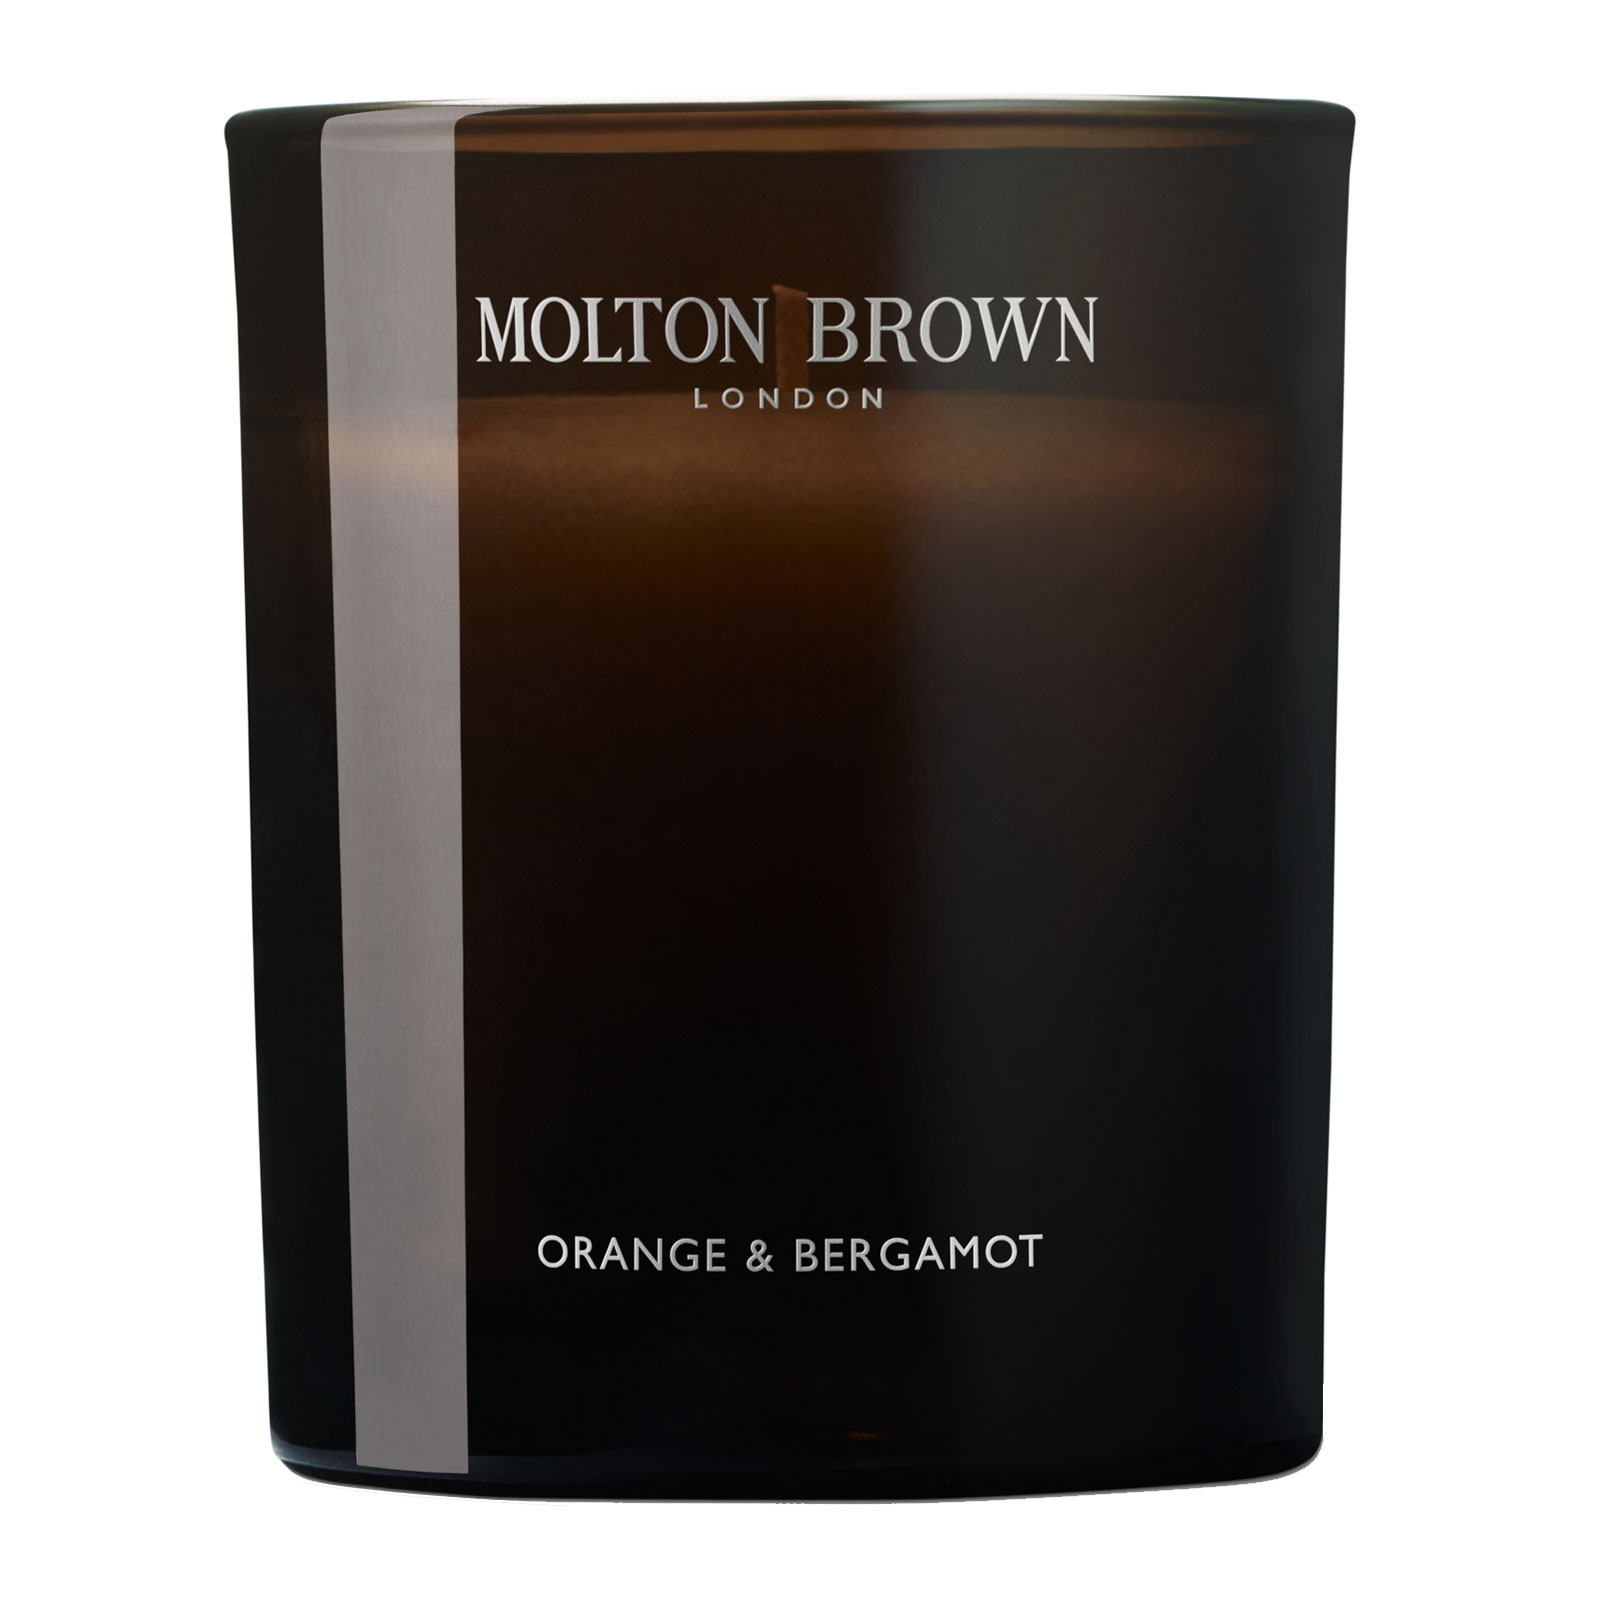 Molton Brown Orange & Bergamot Signature Scented Single Wick Candle 190G